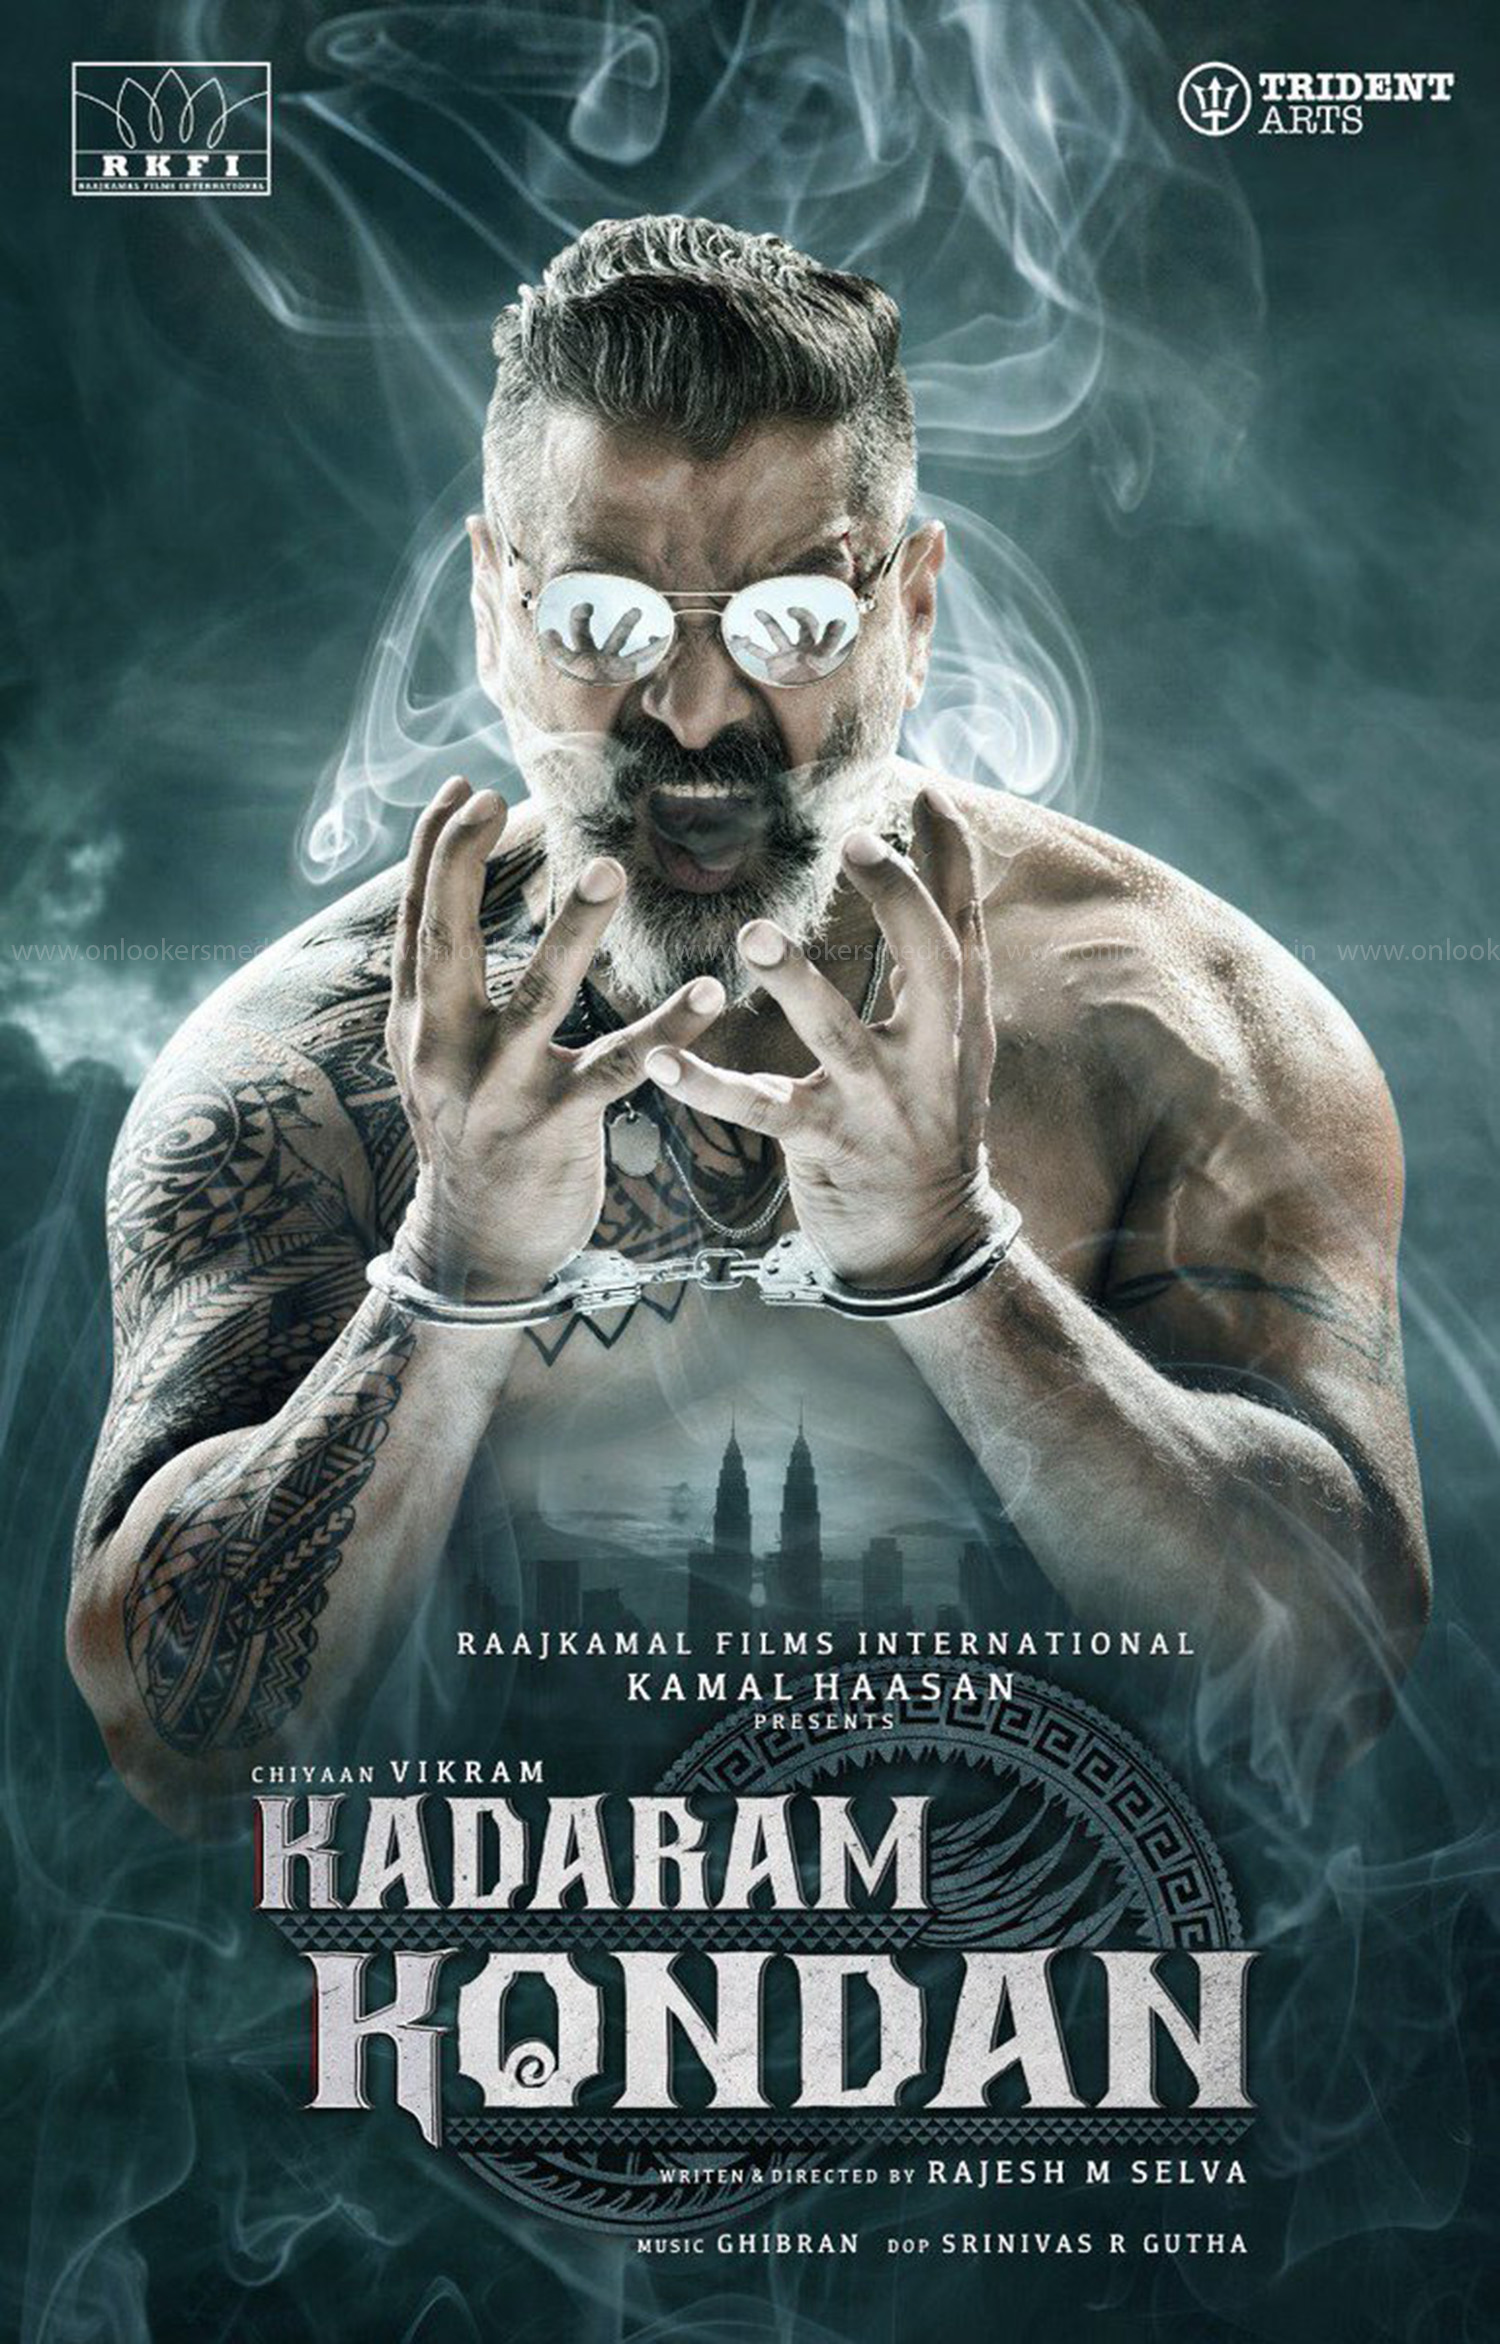 Kadaram Kondan,chiyaan vikram,Kadaram Kondan first look poster,chiyaan 56,vikram's Kadaram Kondan first look poster,vikram's new movie